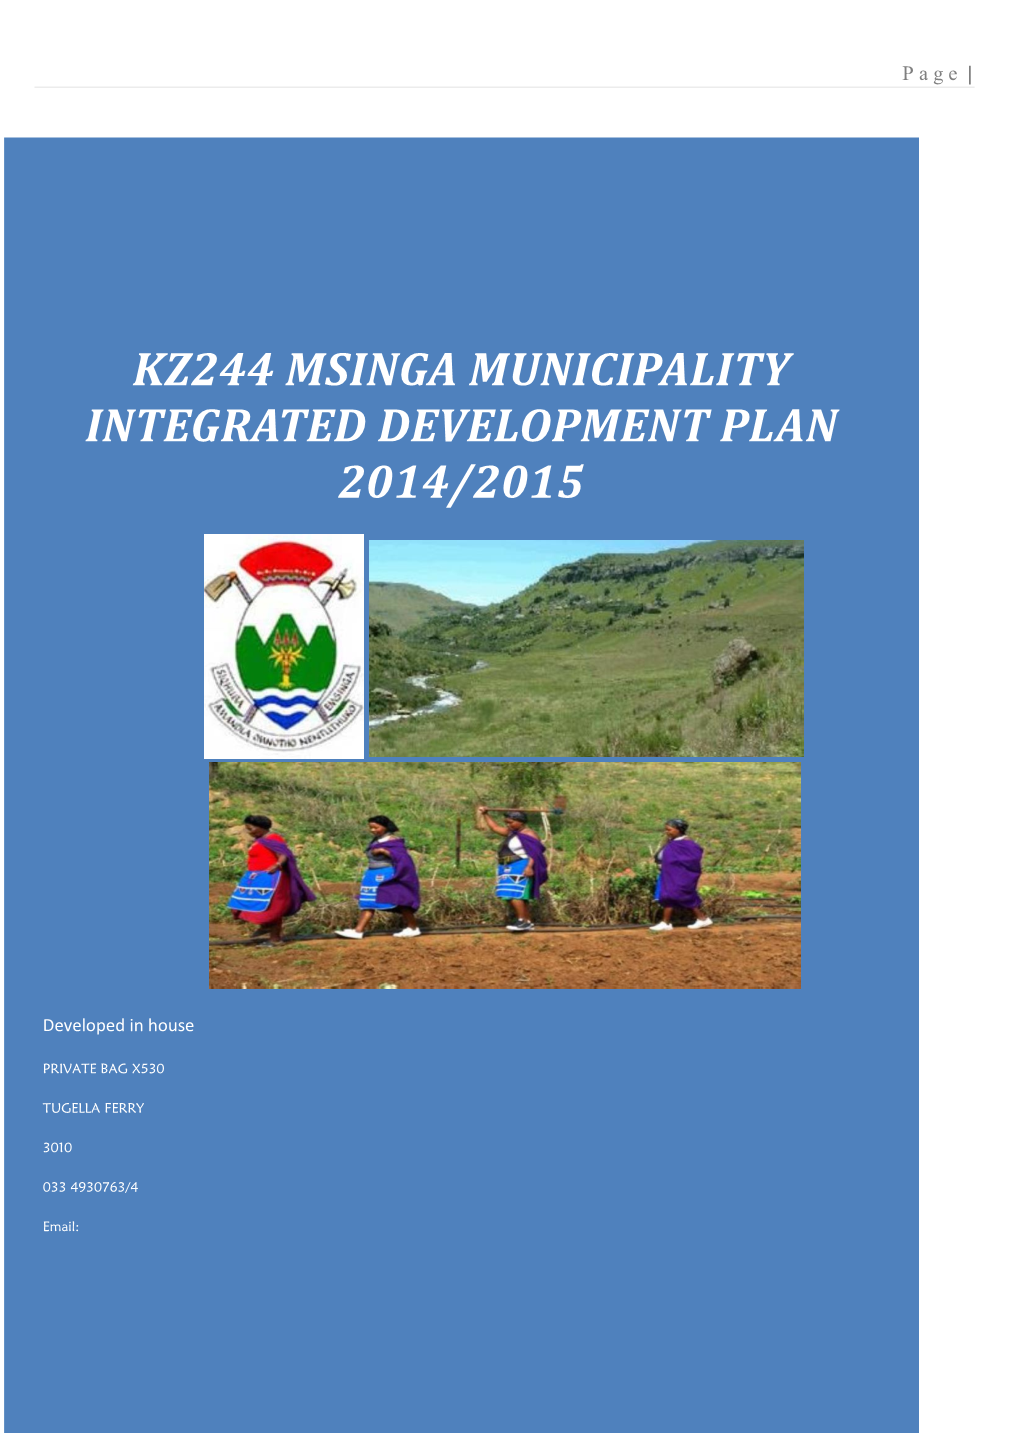 Kz244 Msinga Municipality Integrated Development Plan 2014/2015